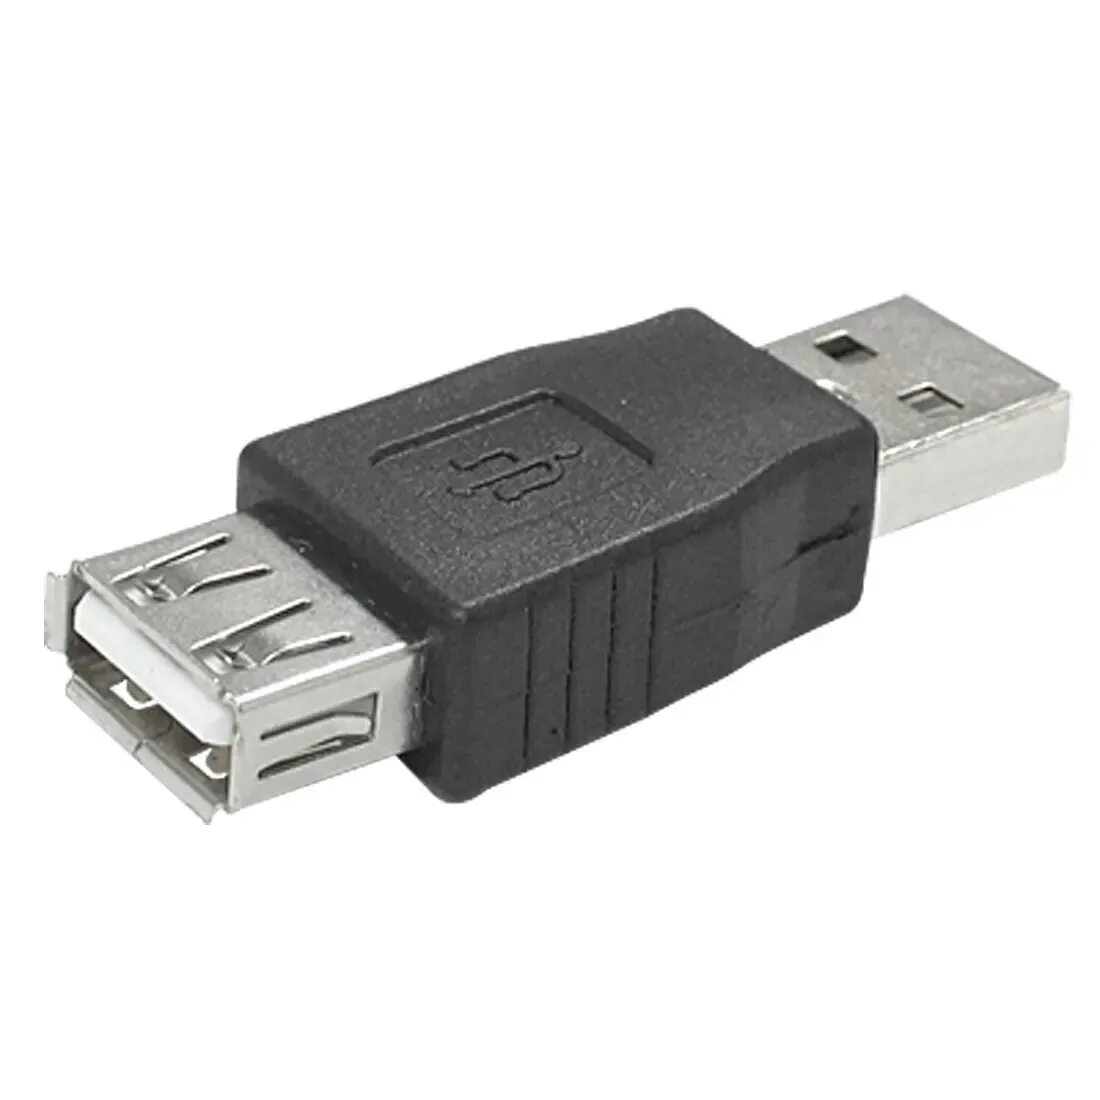 Переходник USB (ГН. USB А - Micro шт. USB А) Rexant. USB 2.0 коннектор Type-a. Переходник USB male male. USB 2.0 Type a x 3.